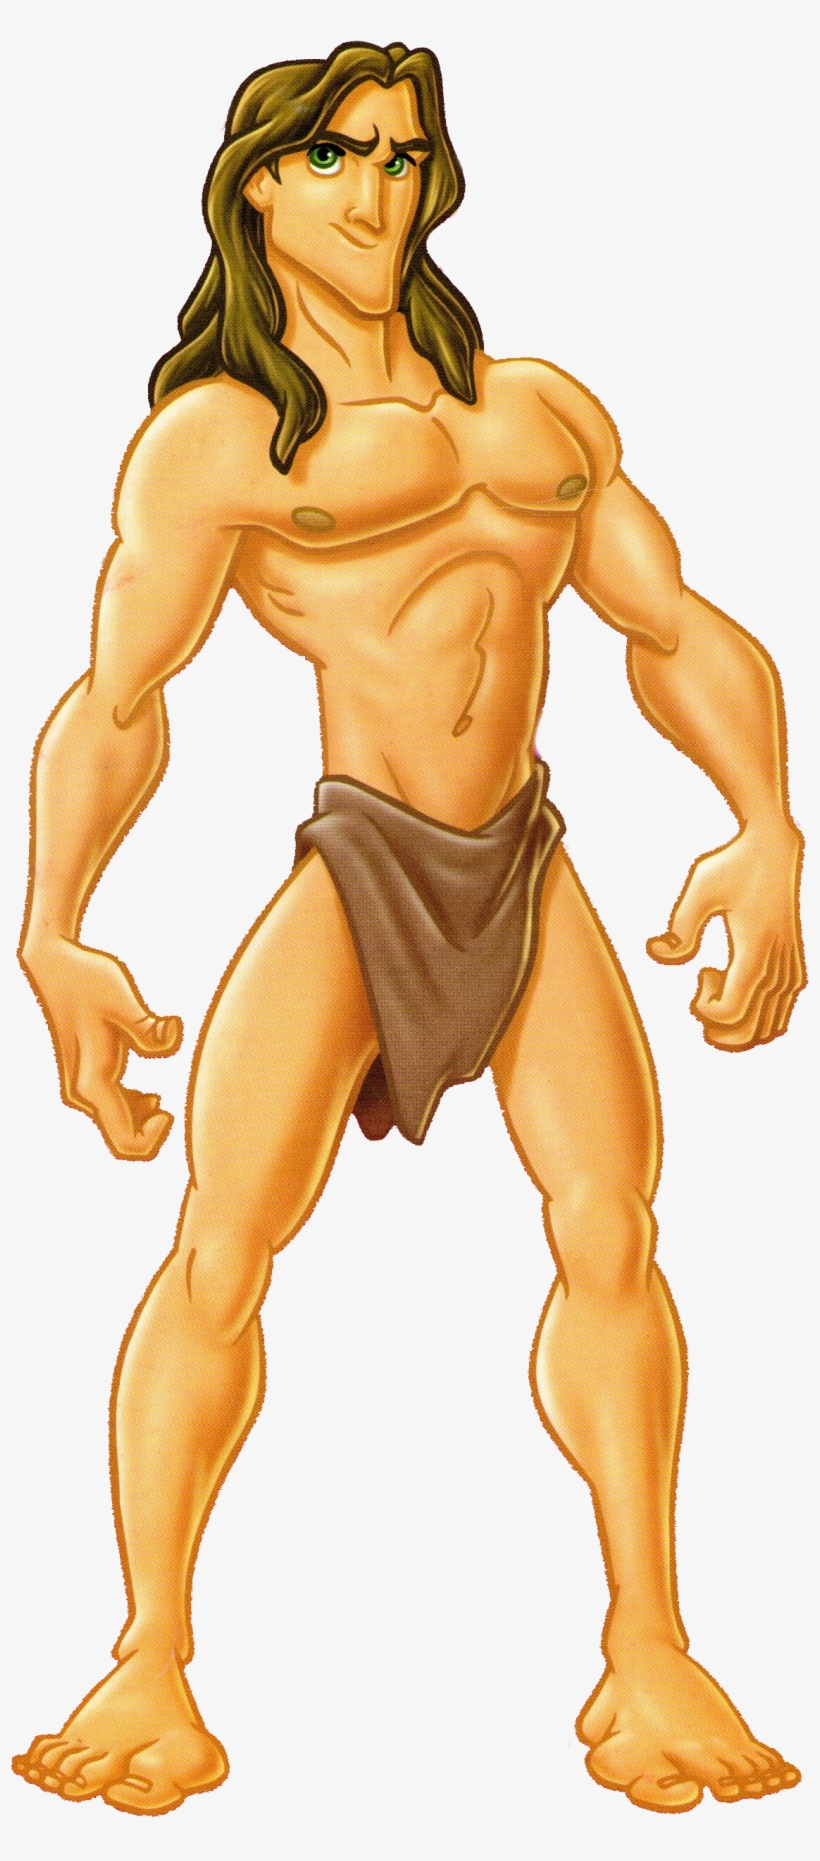 Tarzan Character - Tarzan Disney Character, transparent png #737624